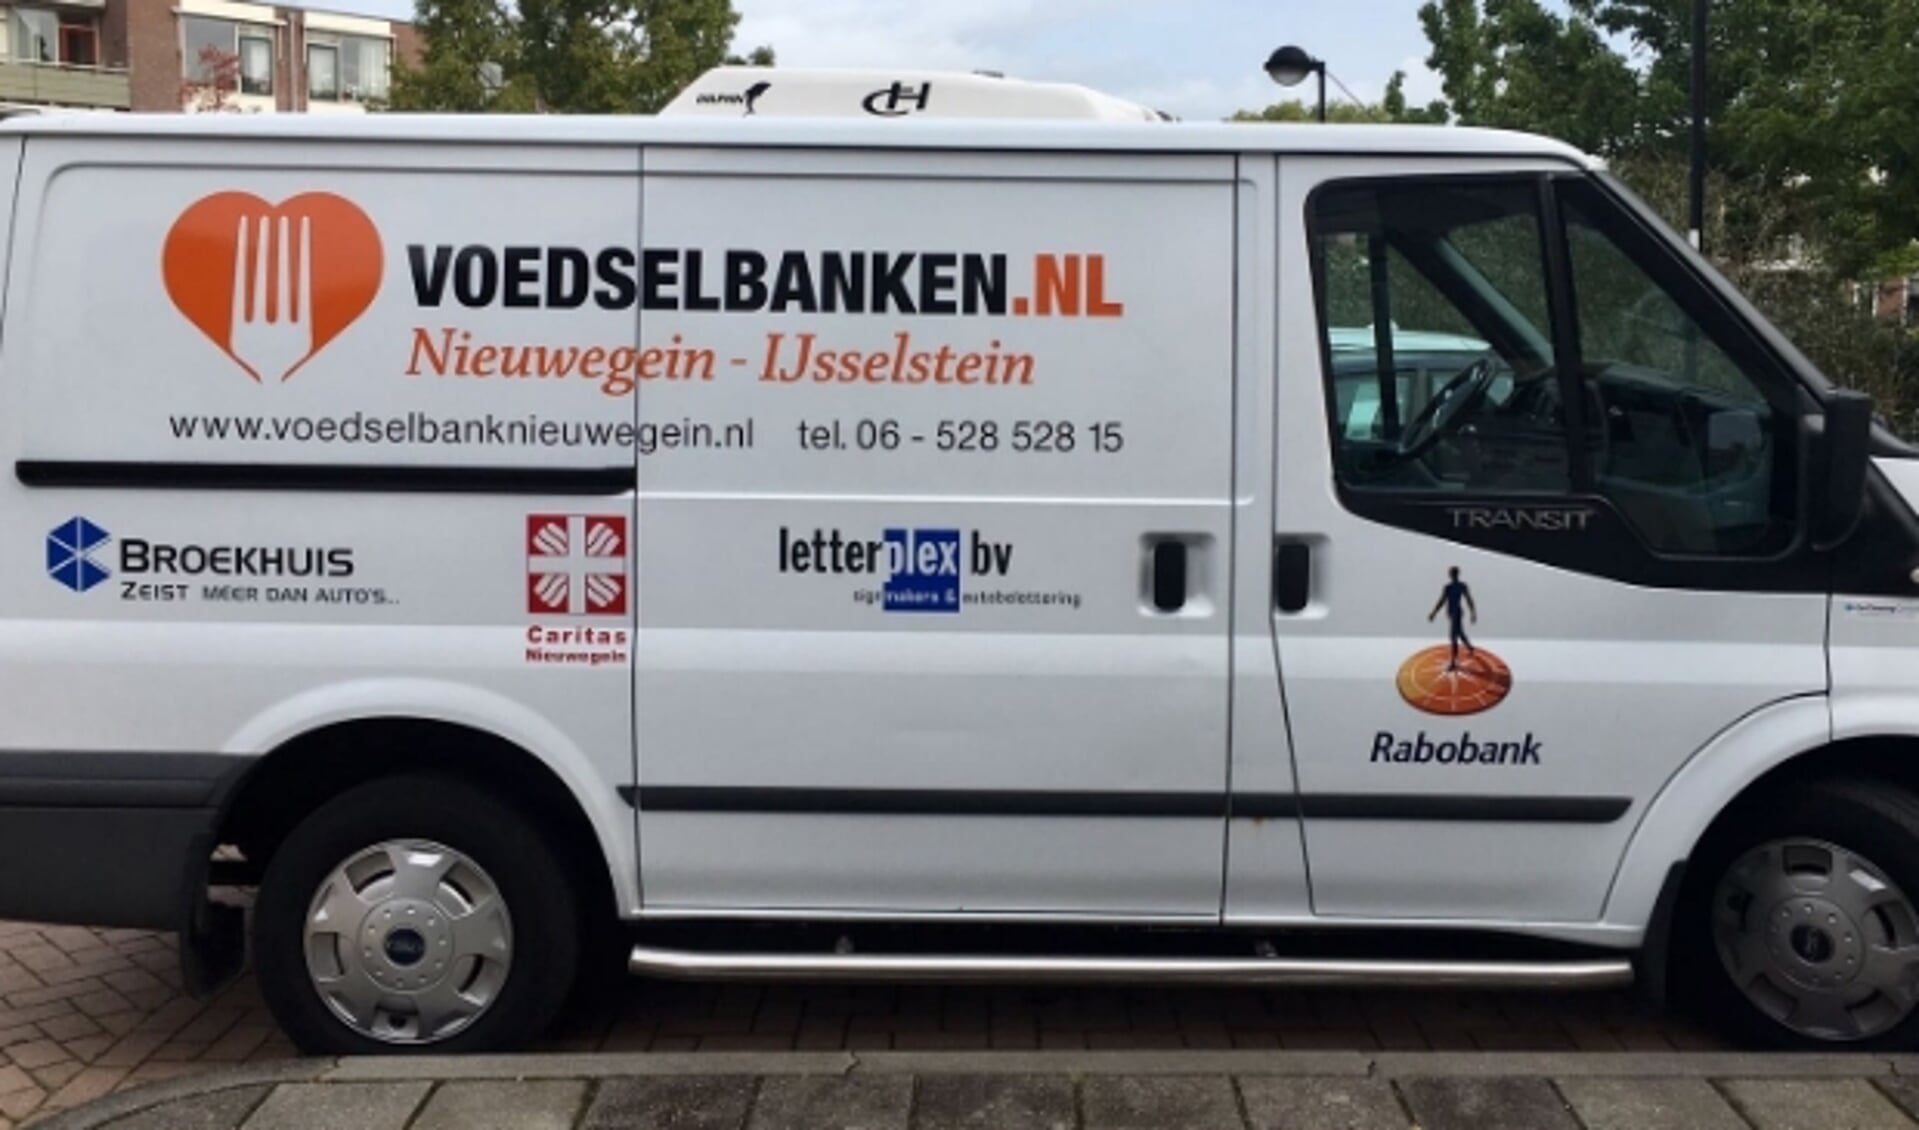 De Voedselbank Nieuwegein-IJsselstein betreurt dat mensen door een verkeerd gevoel van schaamte geen beroep doen op haar hulp. ''Dus stap over de drempel." (Ingezonden foto)